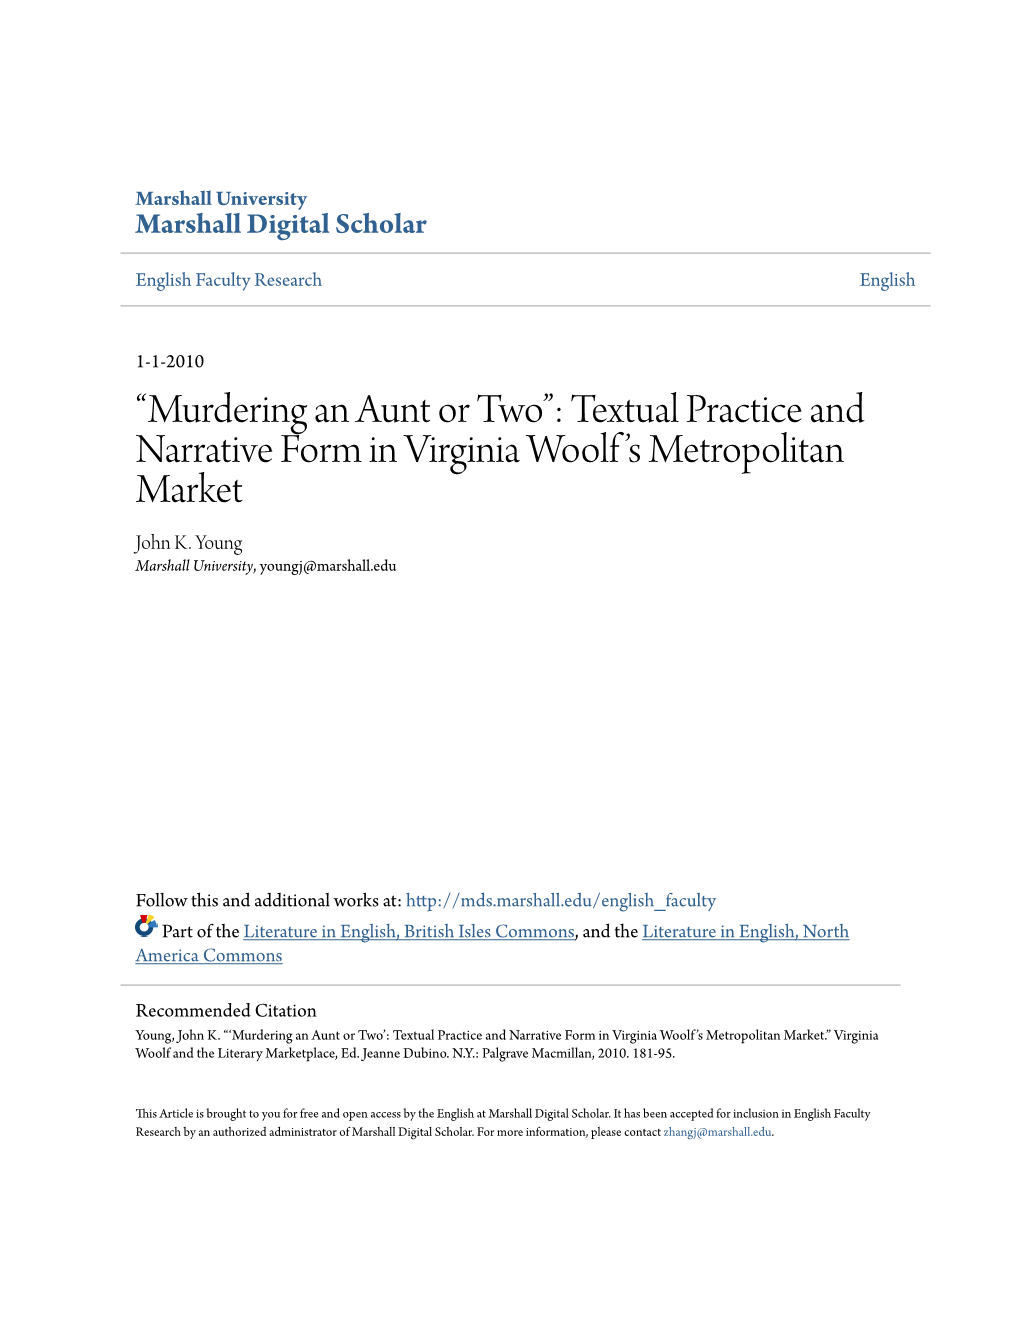 Textual Practice and Narrative Form in Virginia Woolf's Metropolitan Market